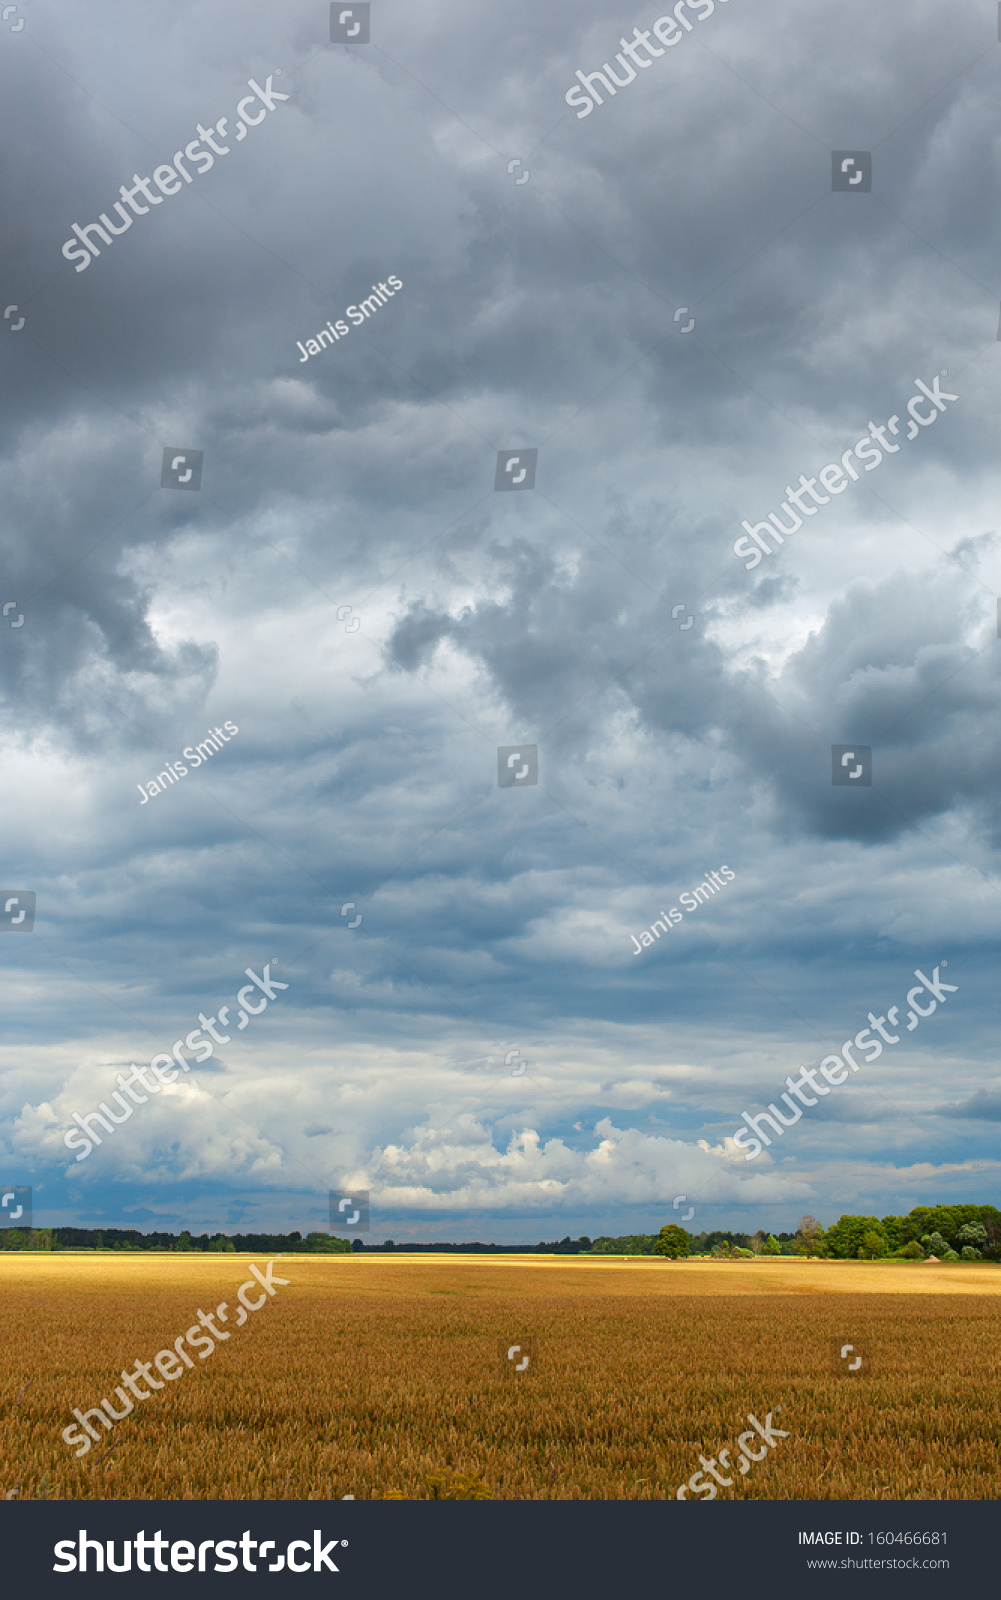 Ripe wheat field under cloudy sky. #160466681